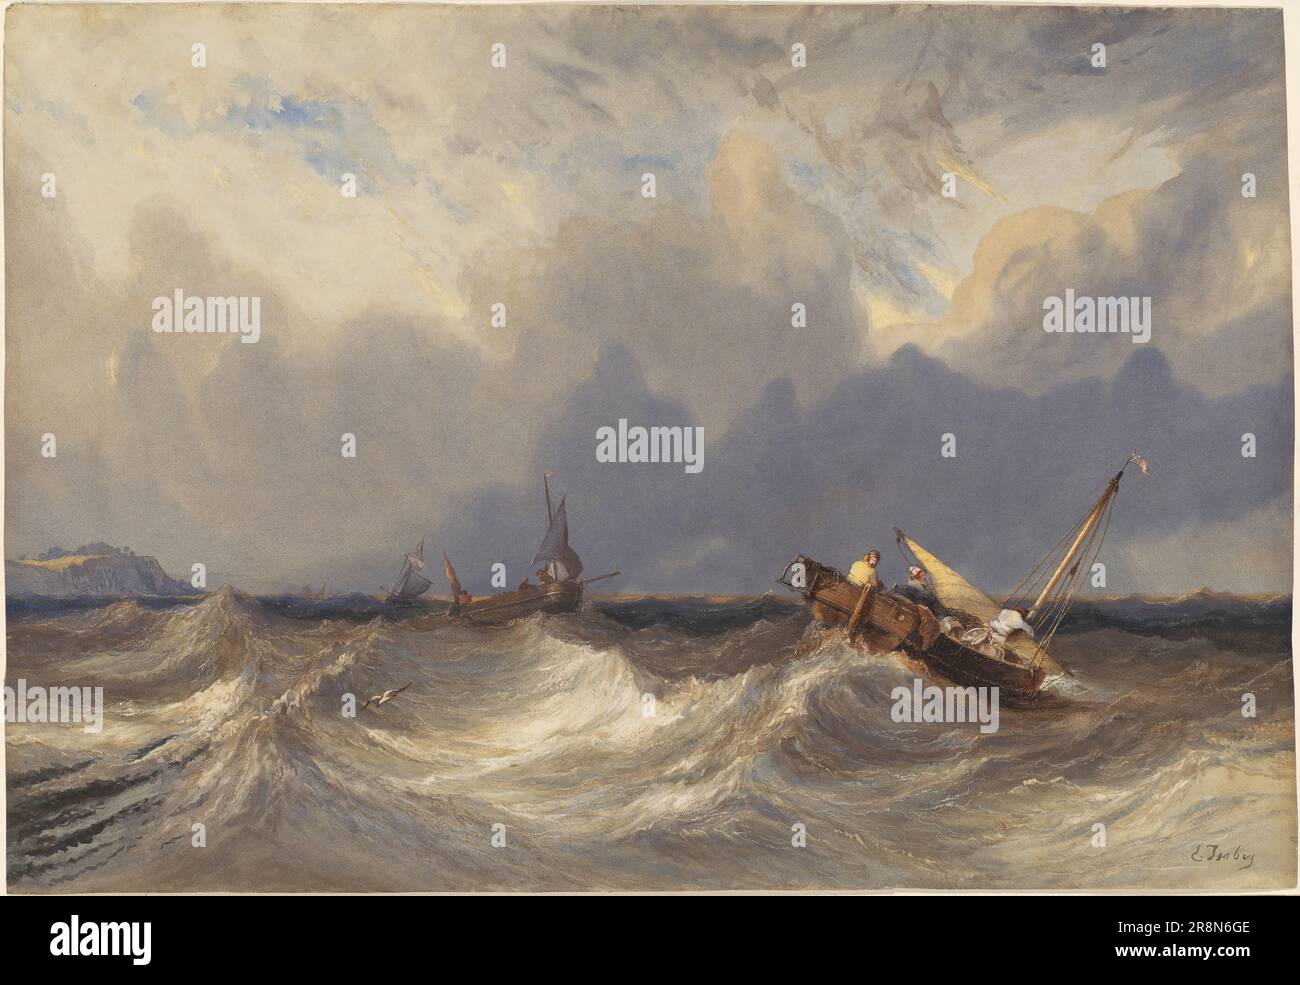 Bateaux de pêche jetés avant une tempête par Eugène Isabey, 1840, aquarelle sur papier vélin, 93.3x63.9 cm, National Gallery of Art, Landover, Maryland (Etats-Unis). Banque D'Images